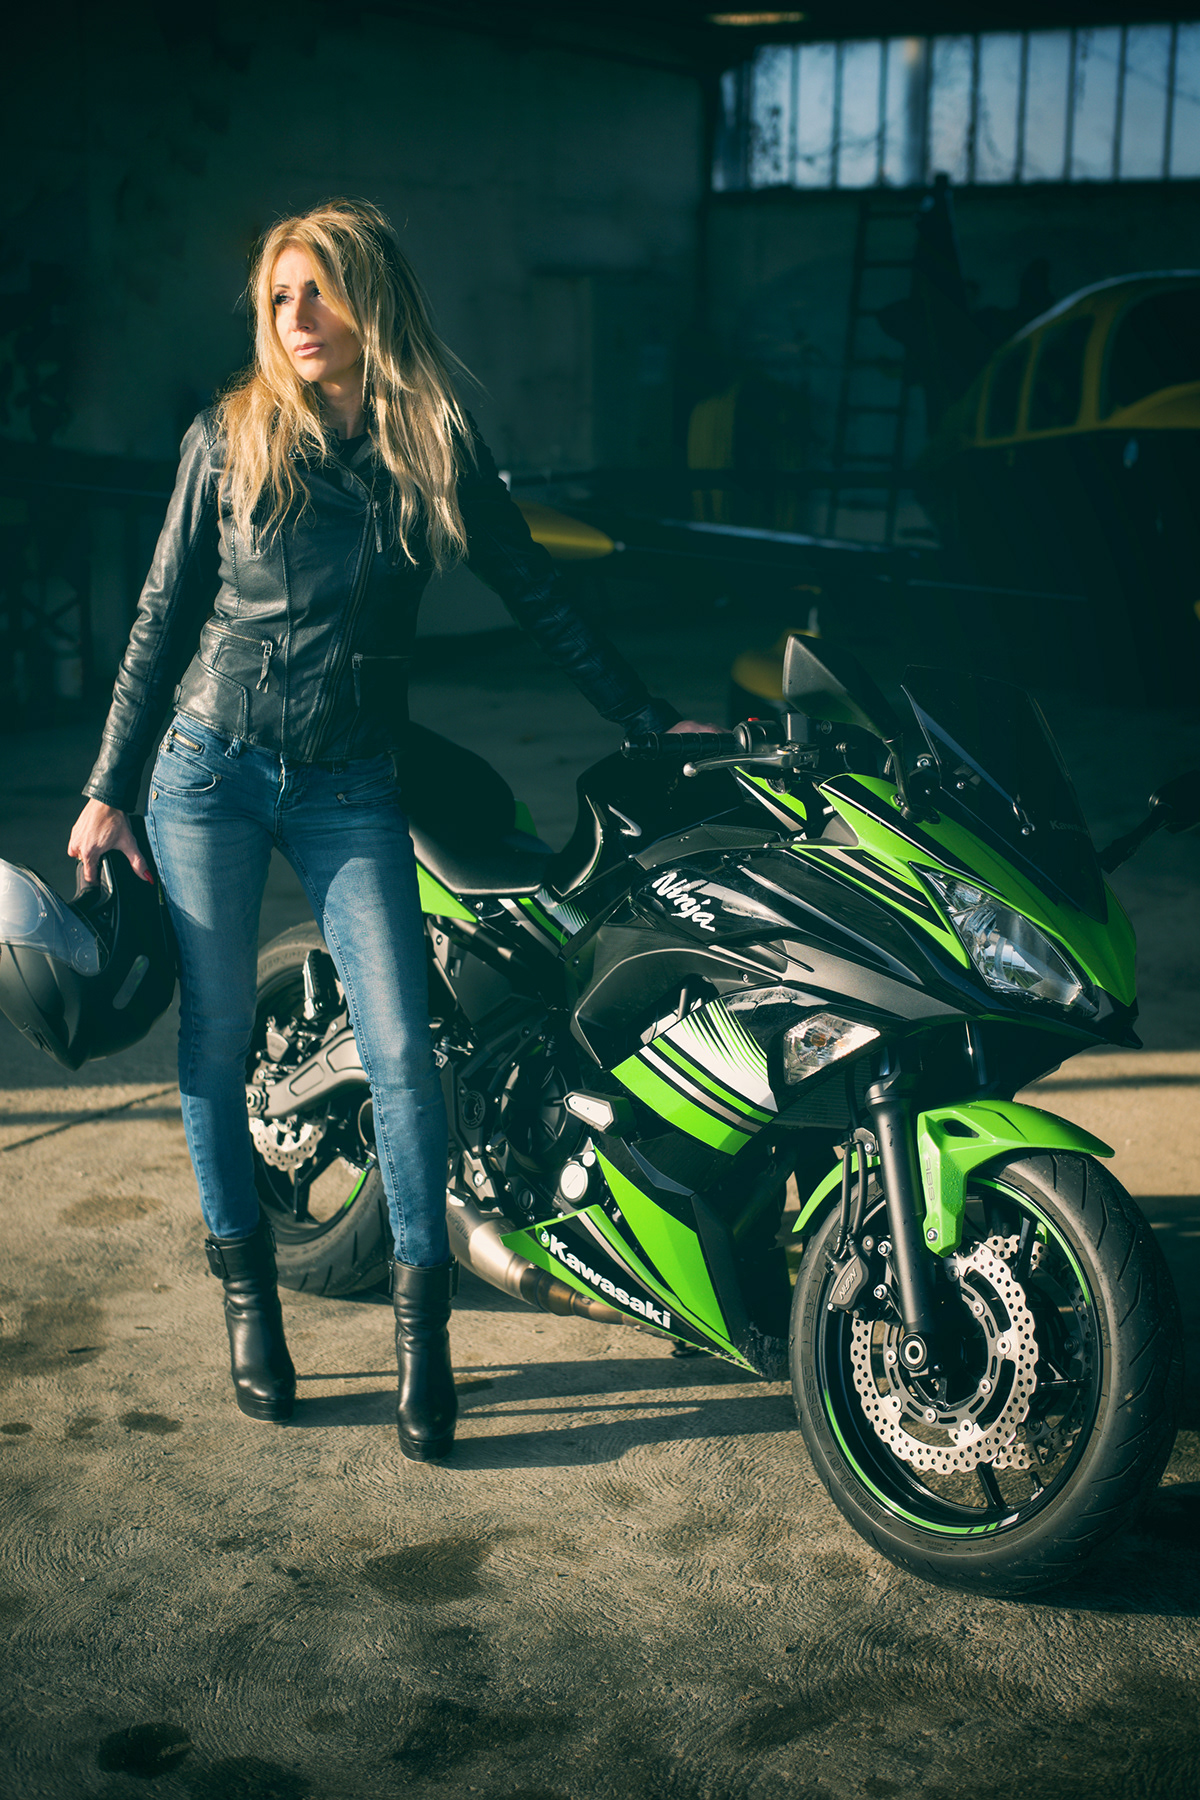 Angie motorbike girl